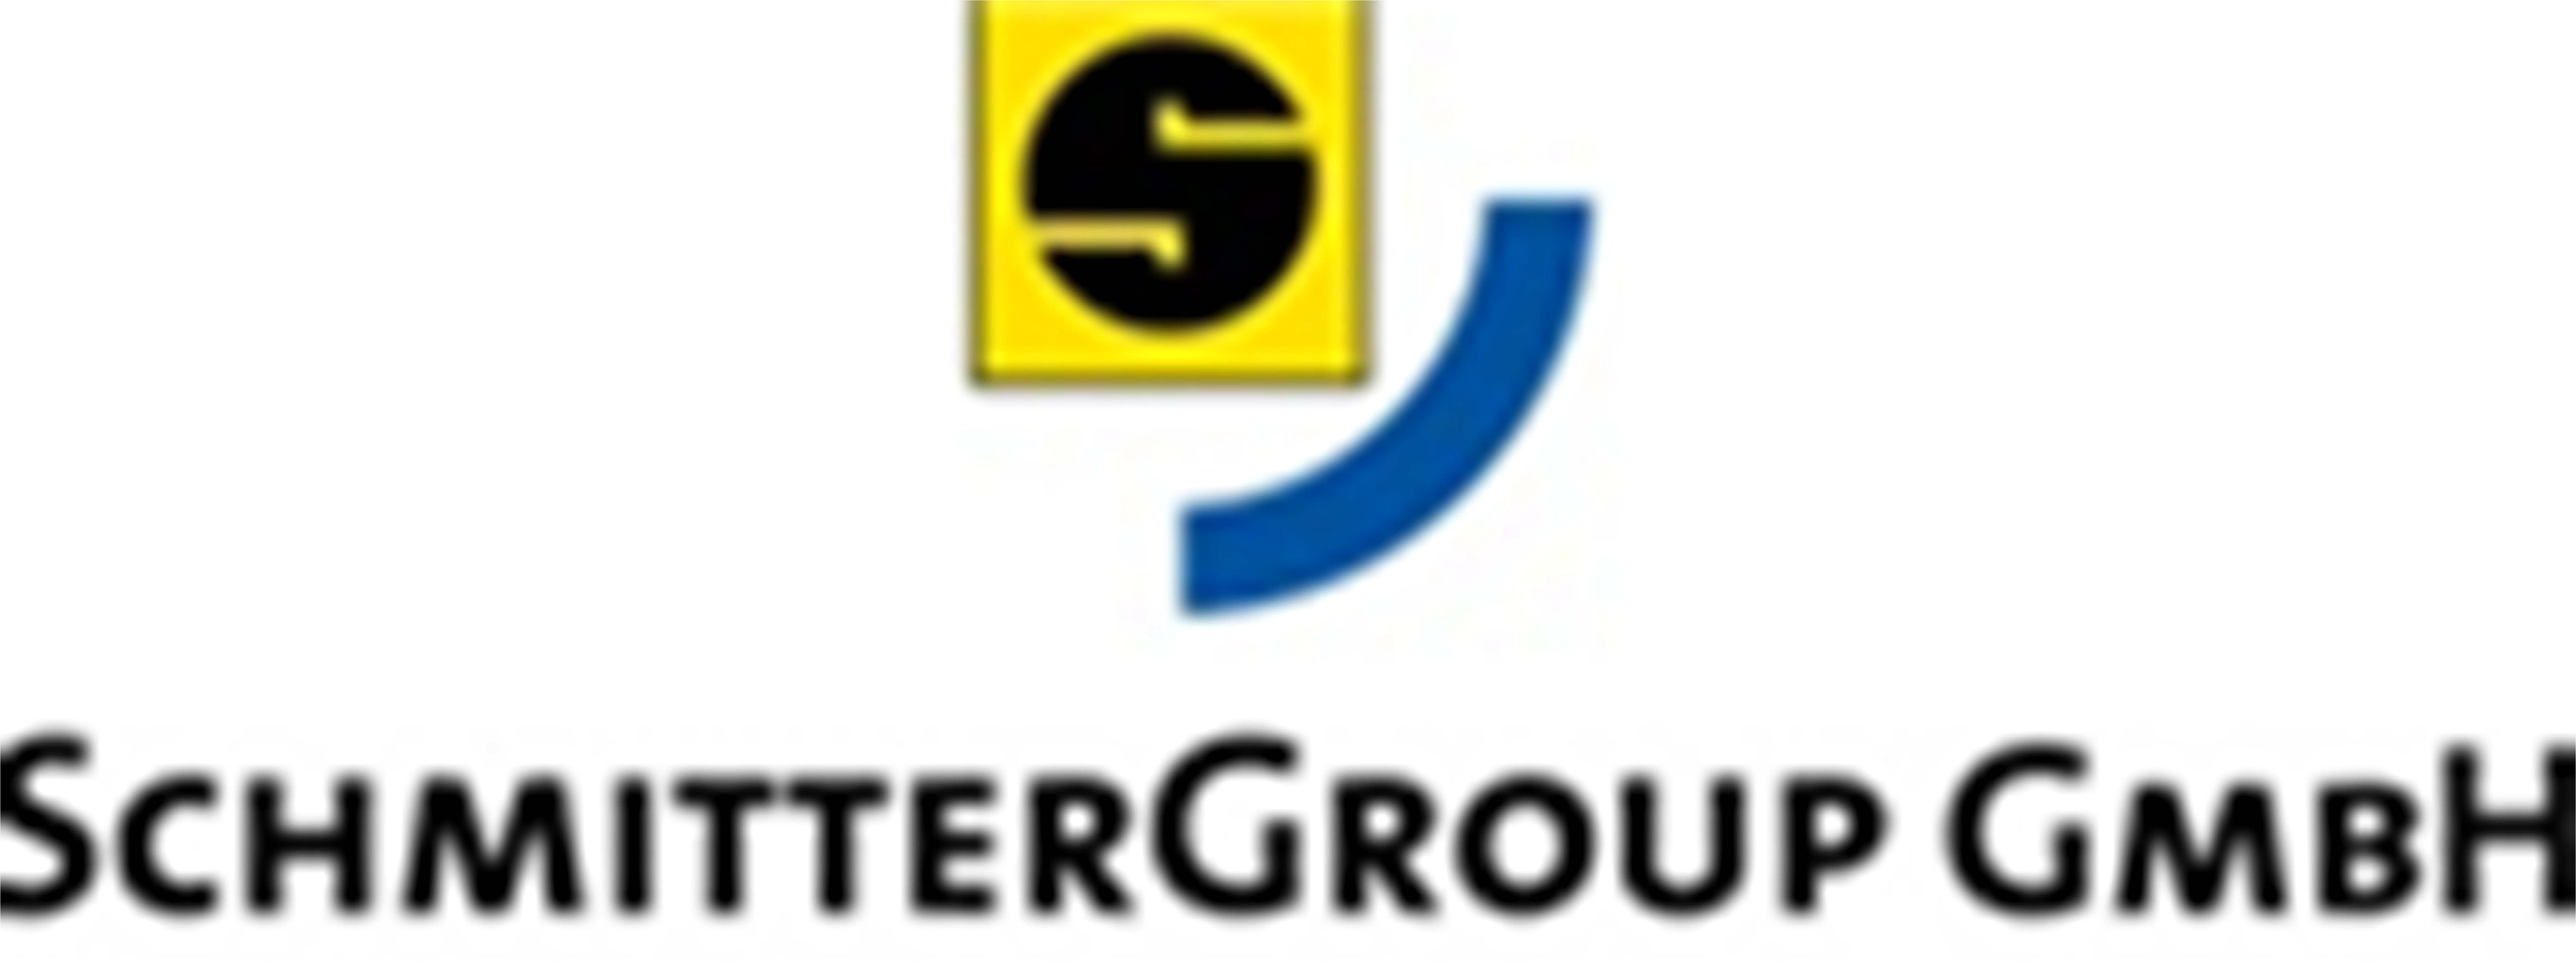 SchmitterGroup GmbH